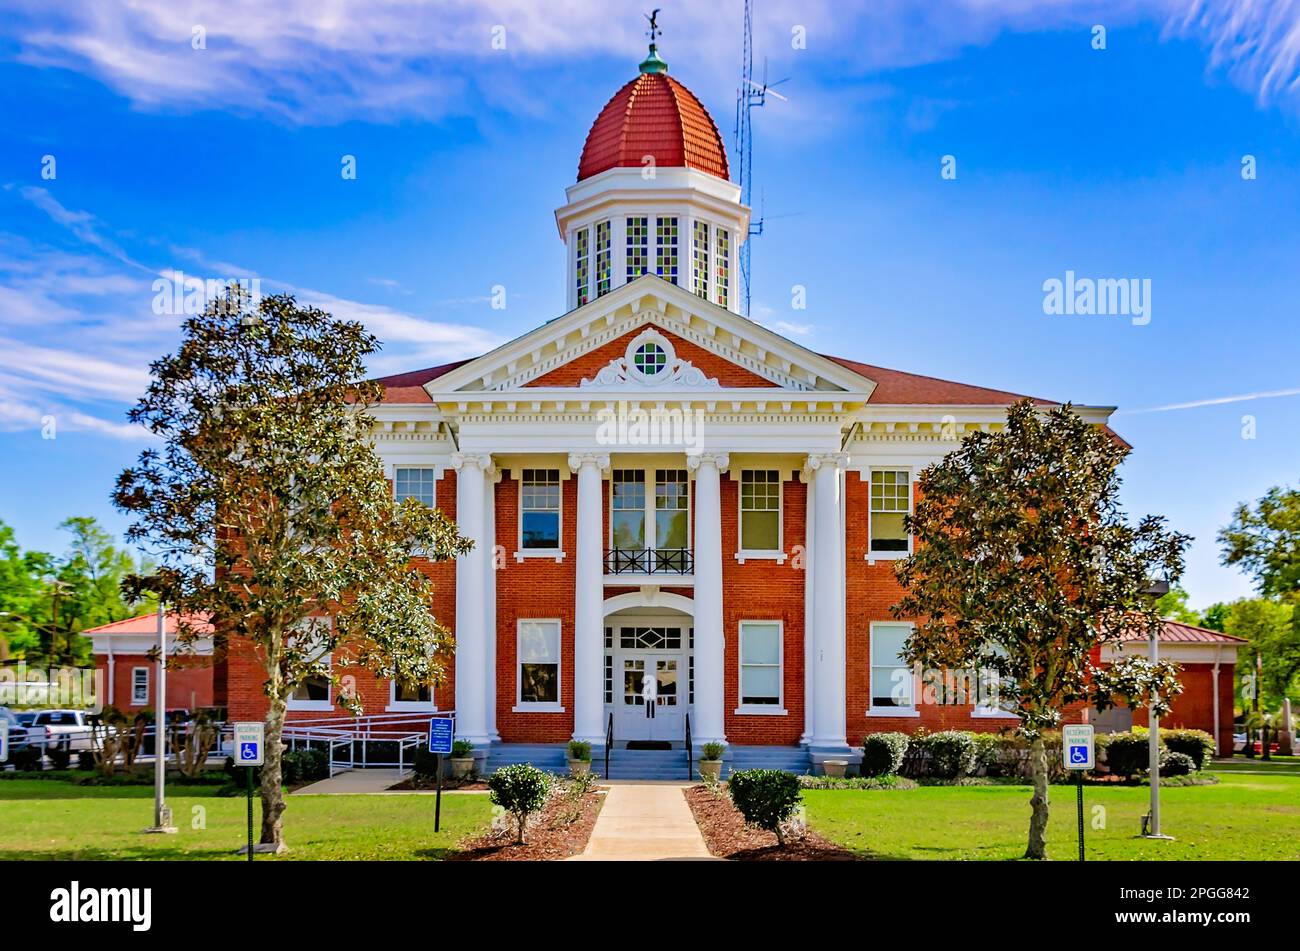 Das George County Courthouse ist am 20. März 2023 in Lucedale, Mississippi, abgebildet. Das neoklassizistische Gerichtsgebäude wurde 1911 erbaut. Stockfoto